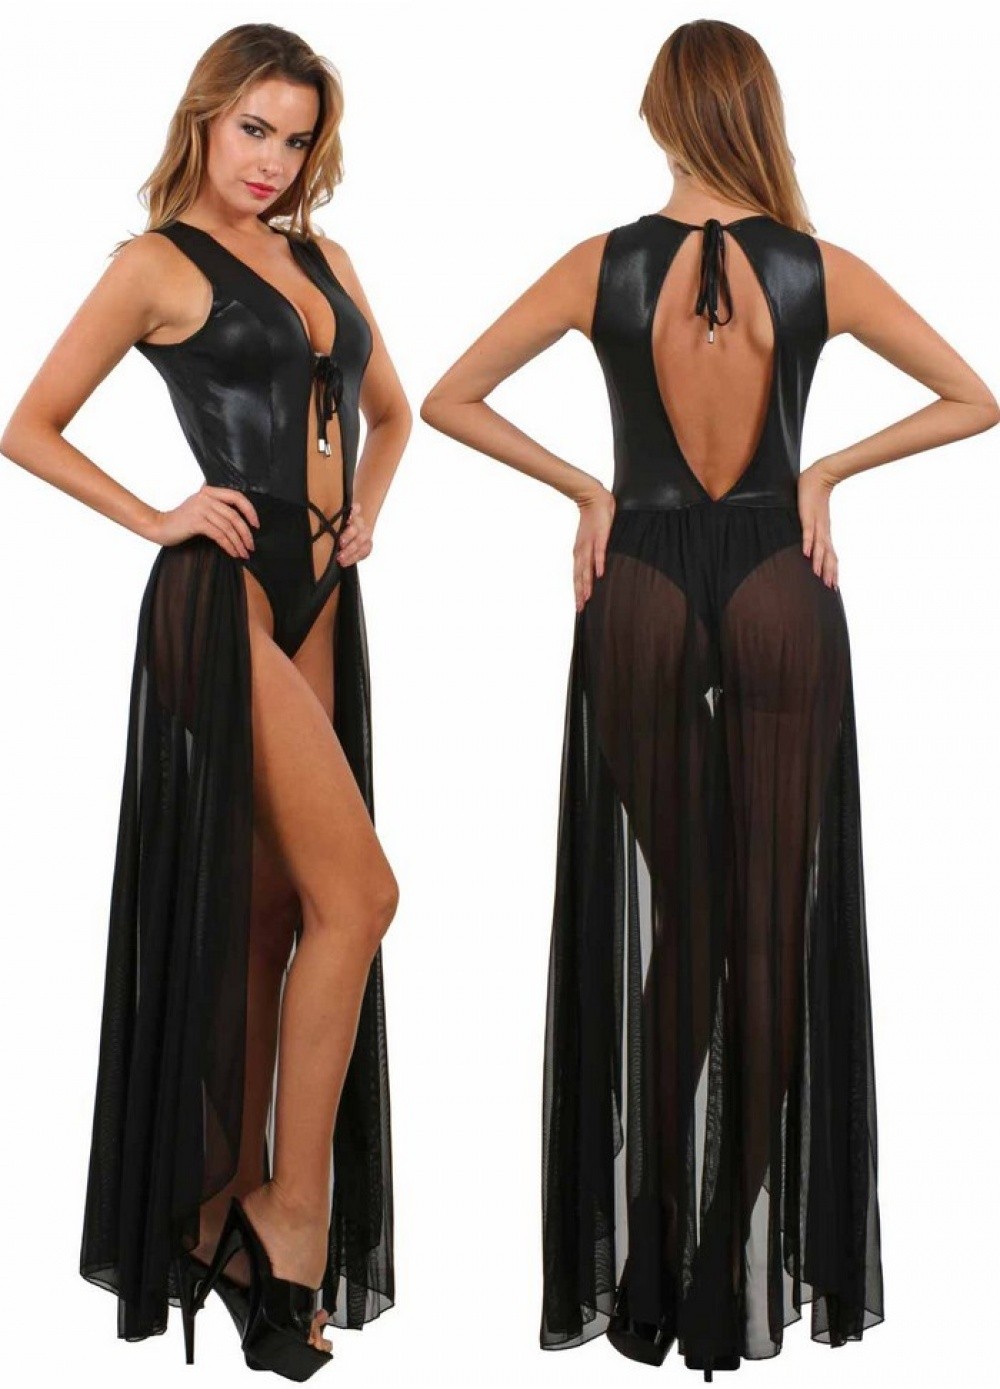 Body robe avec voile noir transparent sur les fesses